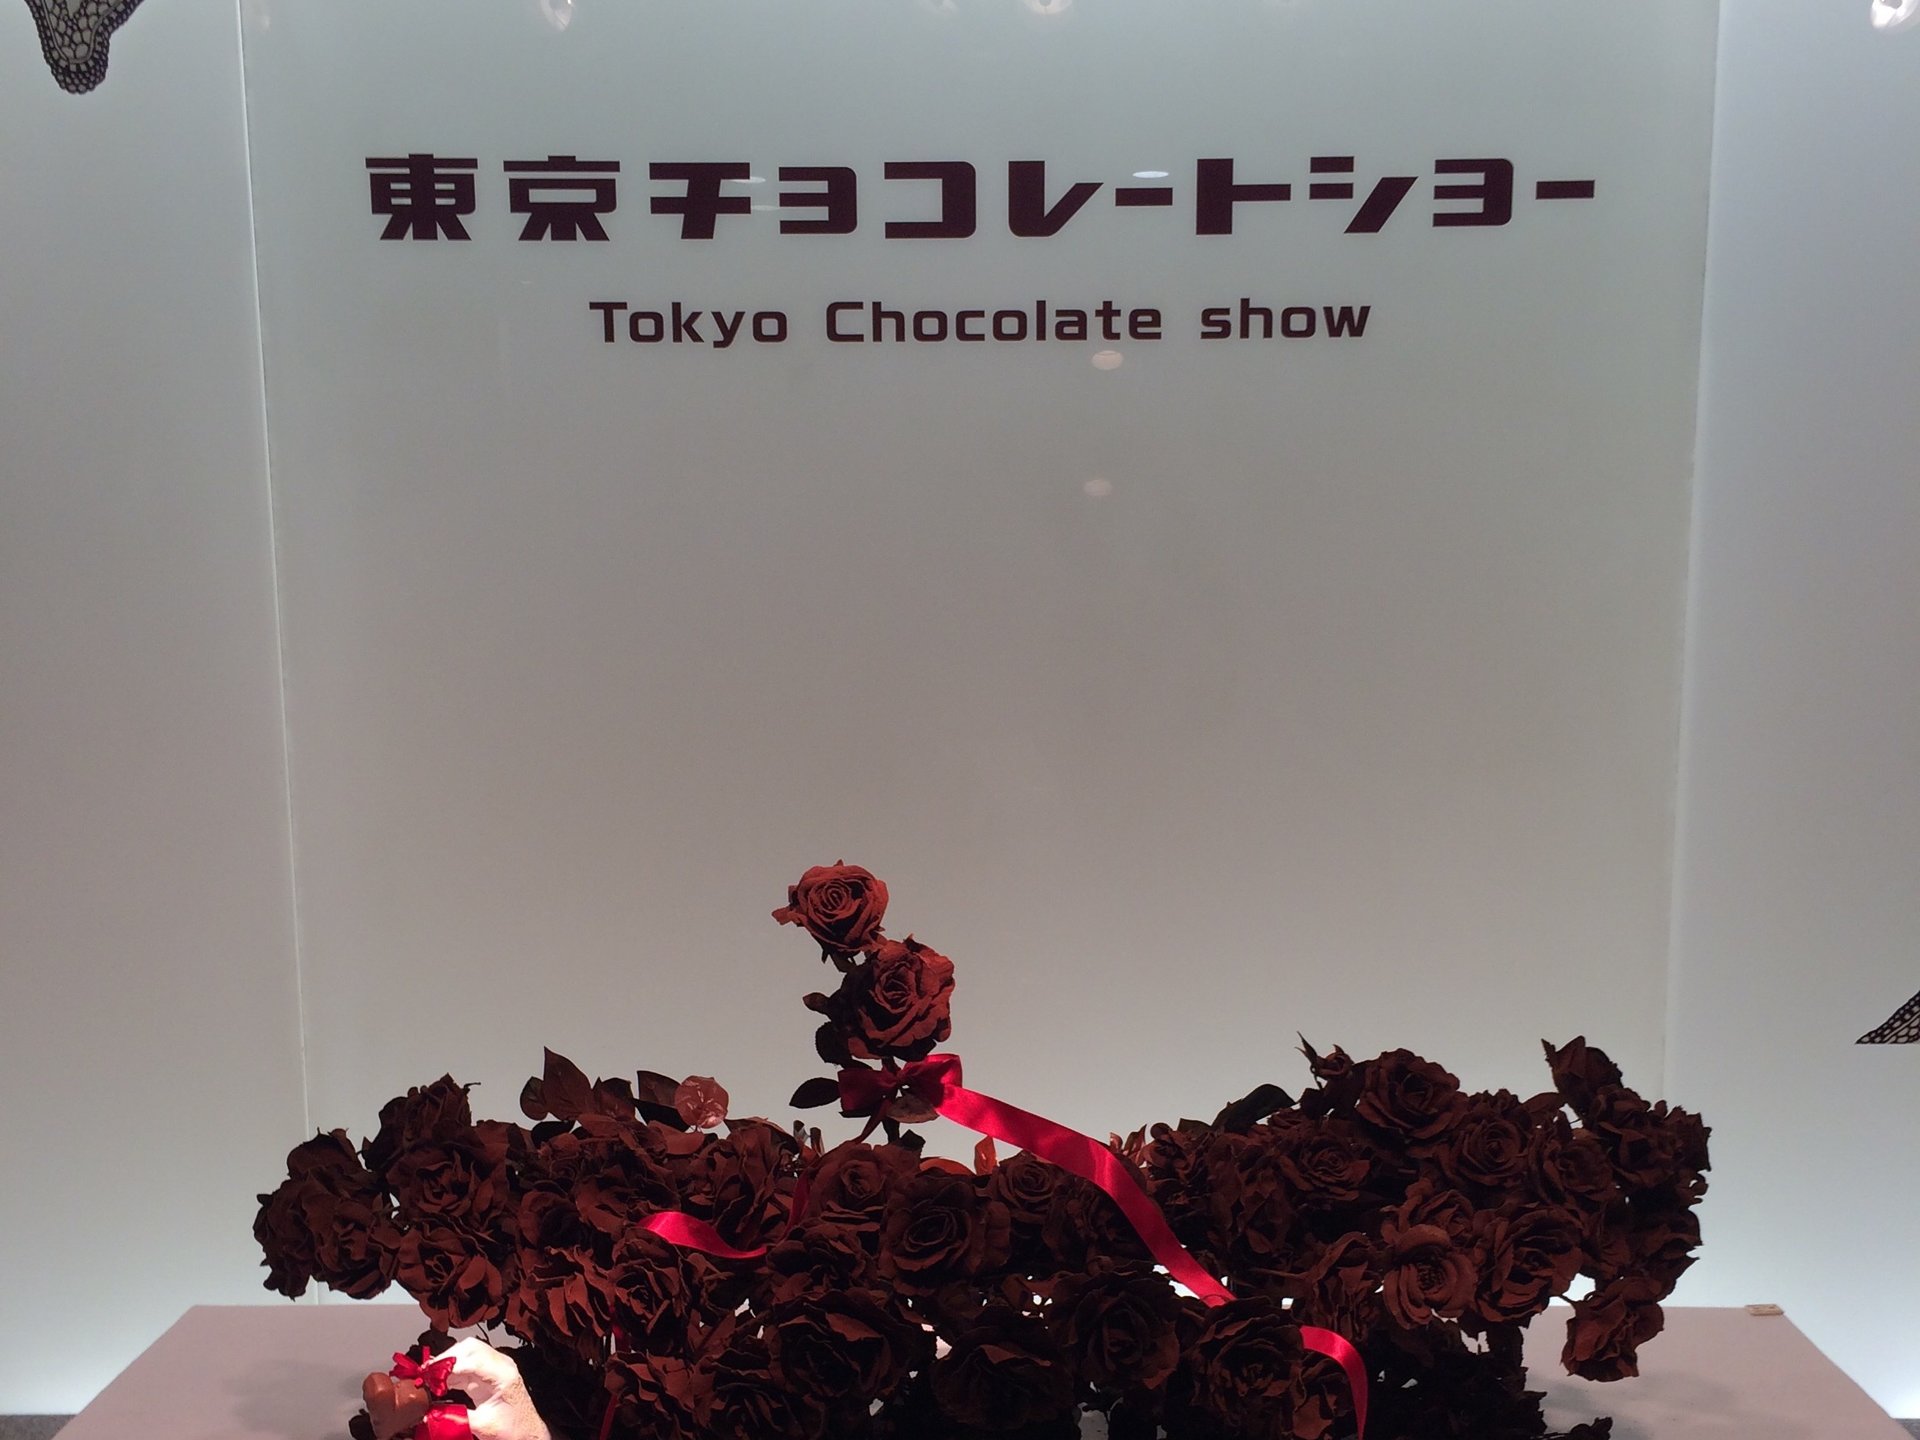 ★東京チョコレートショー2014★ラフォーレミュージアム原宿にて期間限定開催